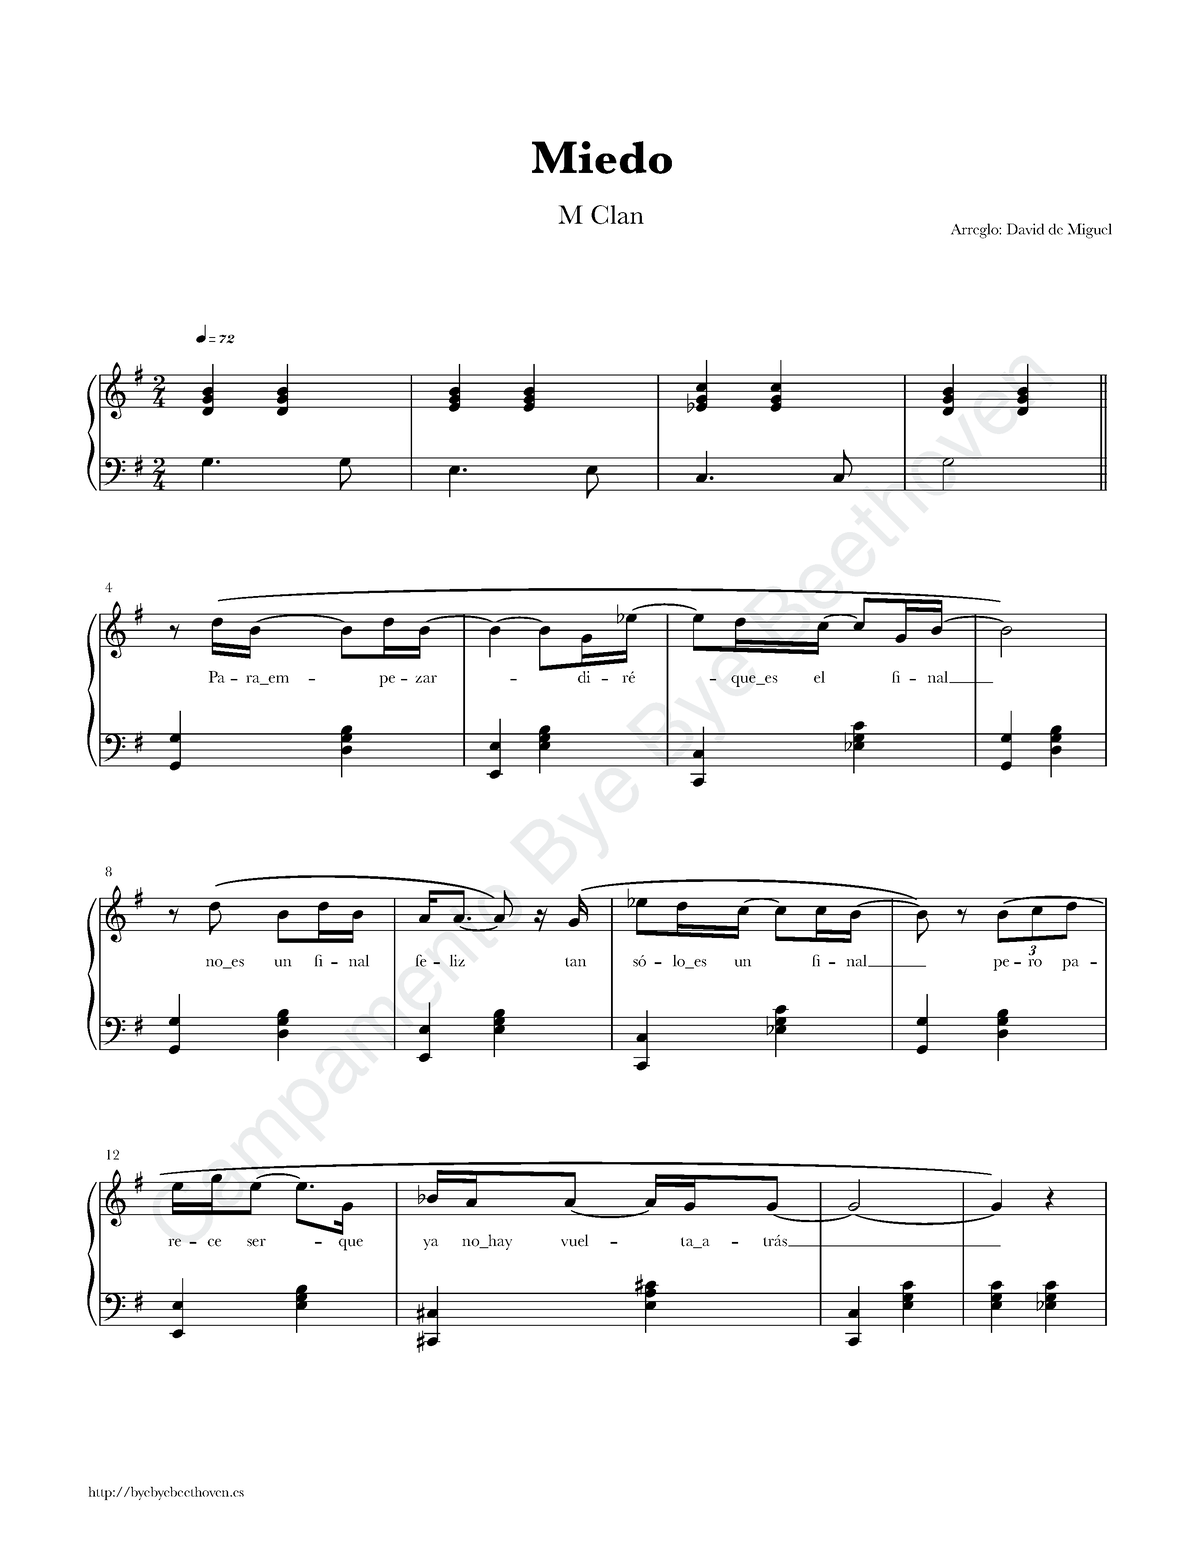 Máxima Evaluación embarazada Partitura Piano Miedo M Clan - Campamento Bye Bye Beethoven Miedo Arreglo:  David de Miguel M Clan - Studocu